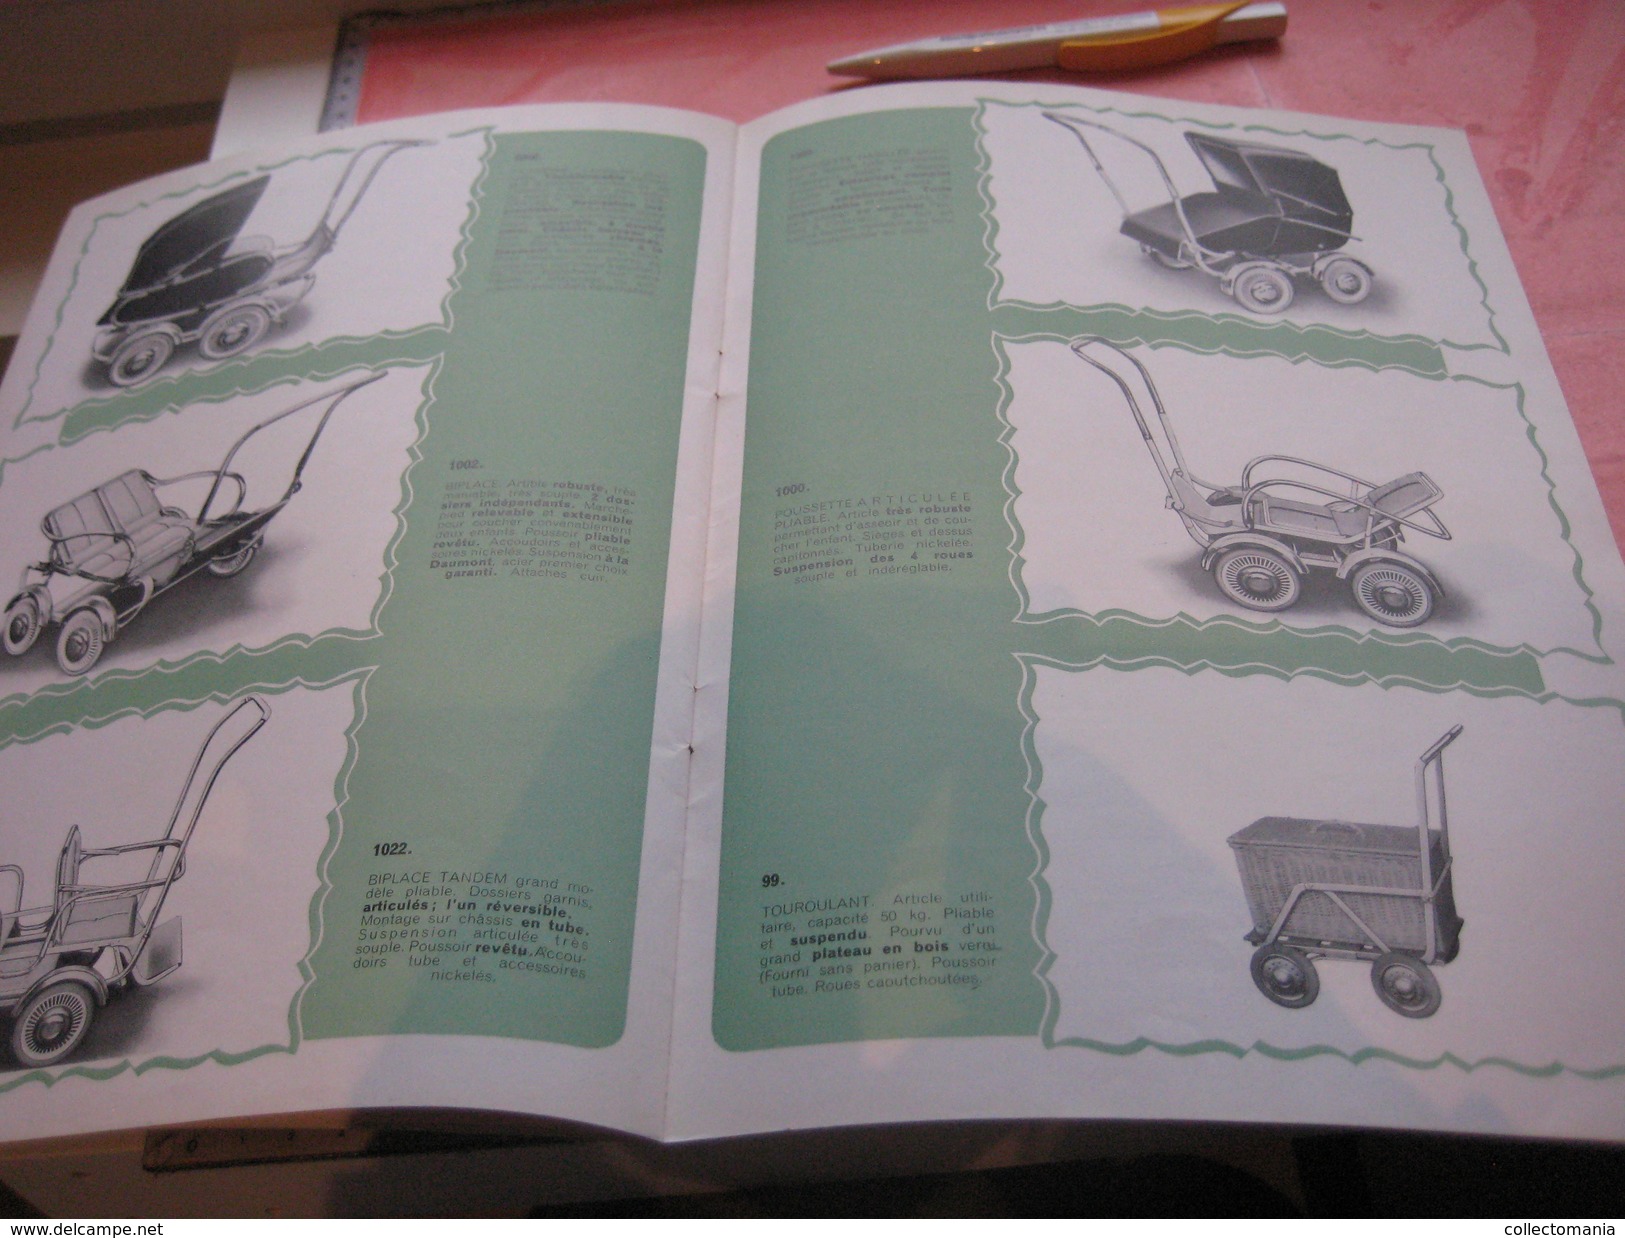 7 catalogues compl +1 catalogus 1937 Morrelet manquant page 1et 2 - PRAMS, Kinderwagens Voitures d'enfants VG carrozzina